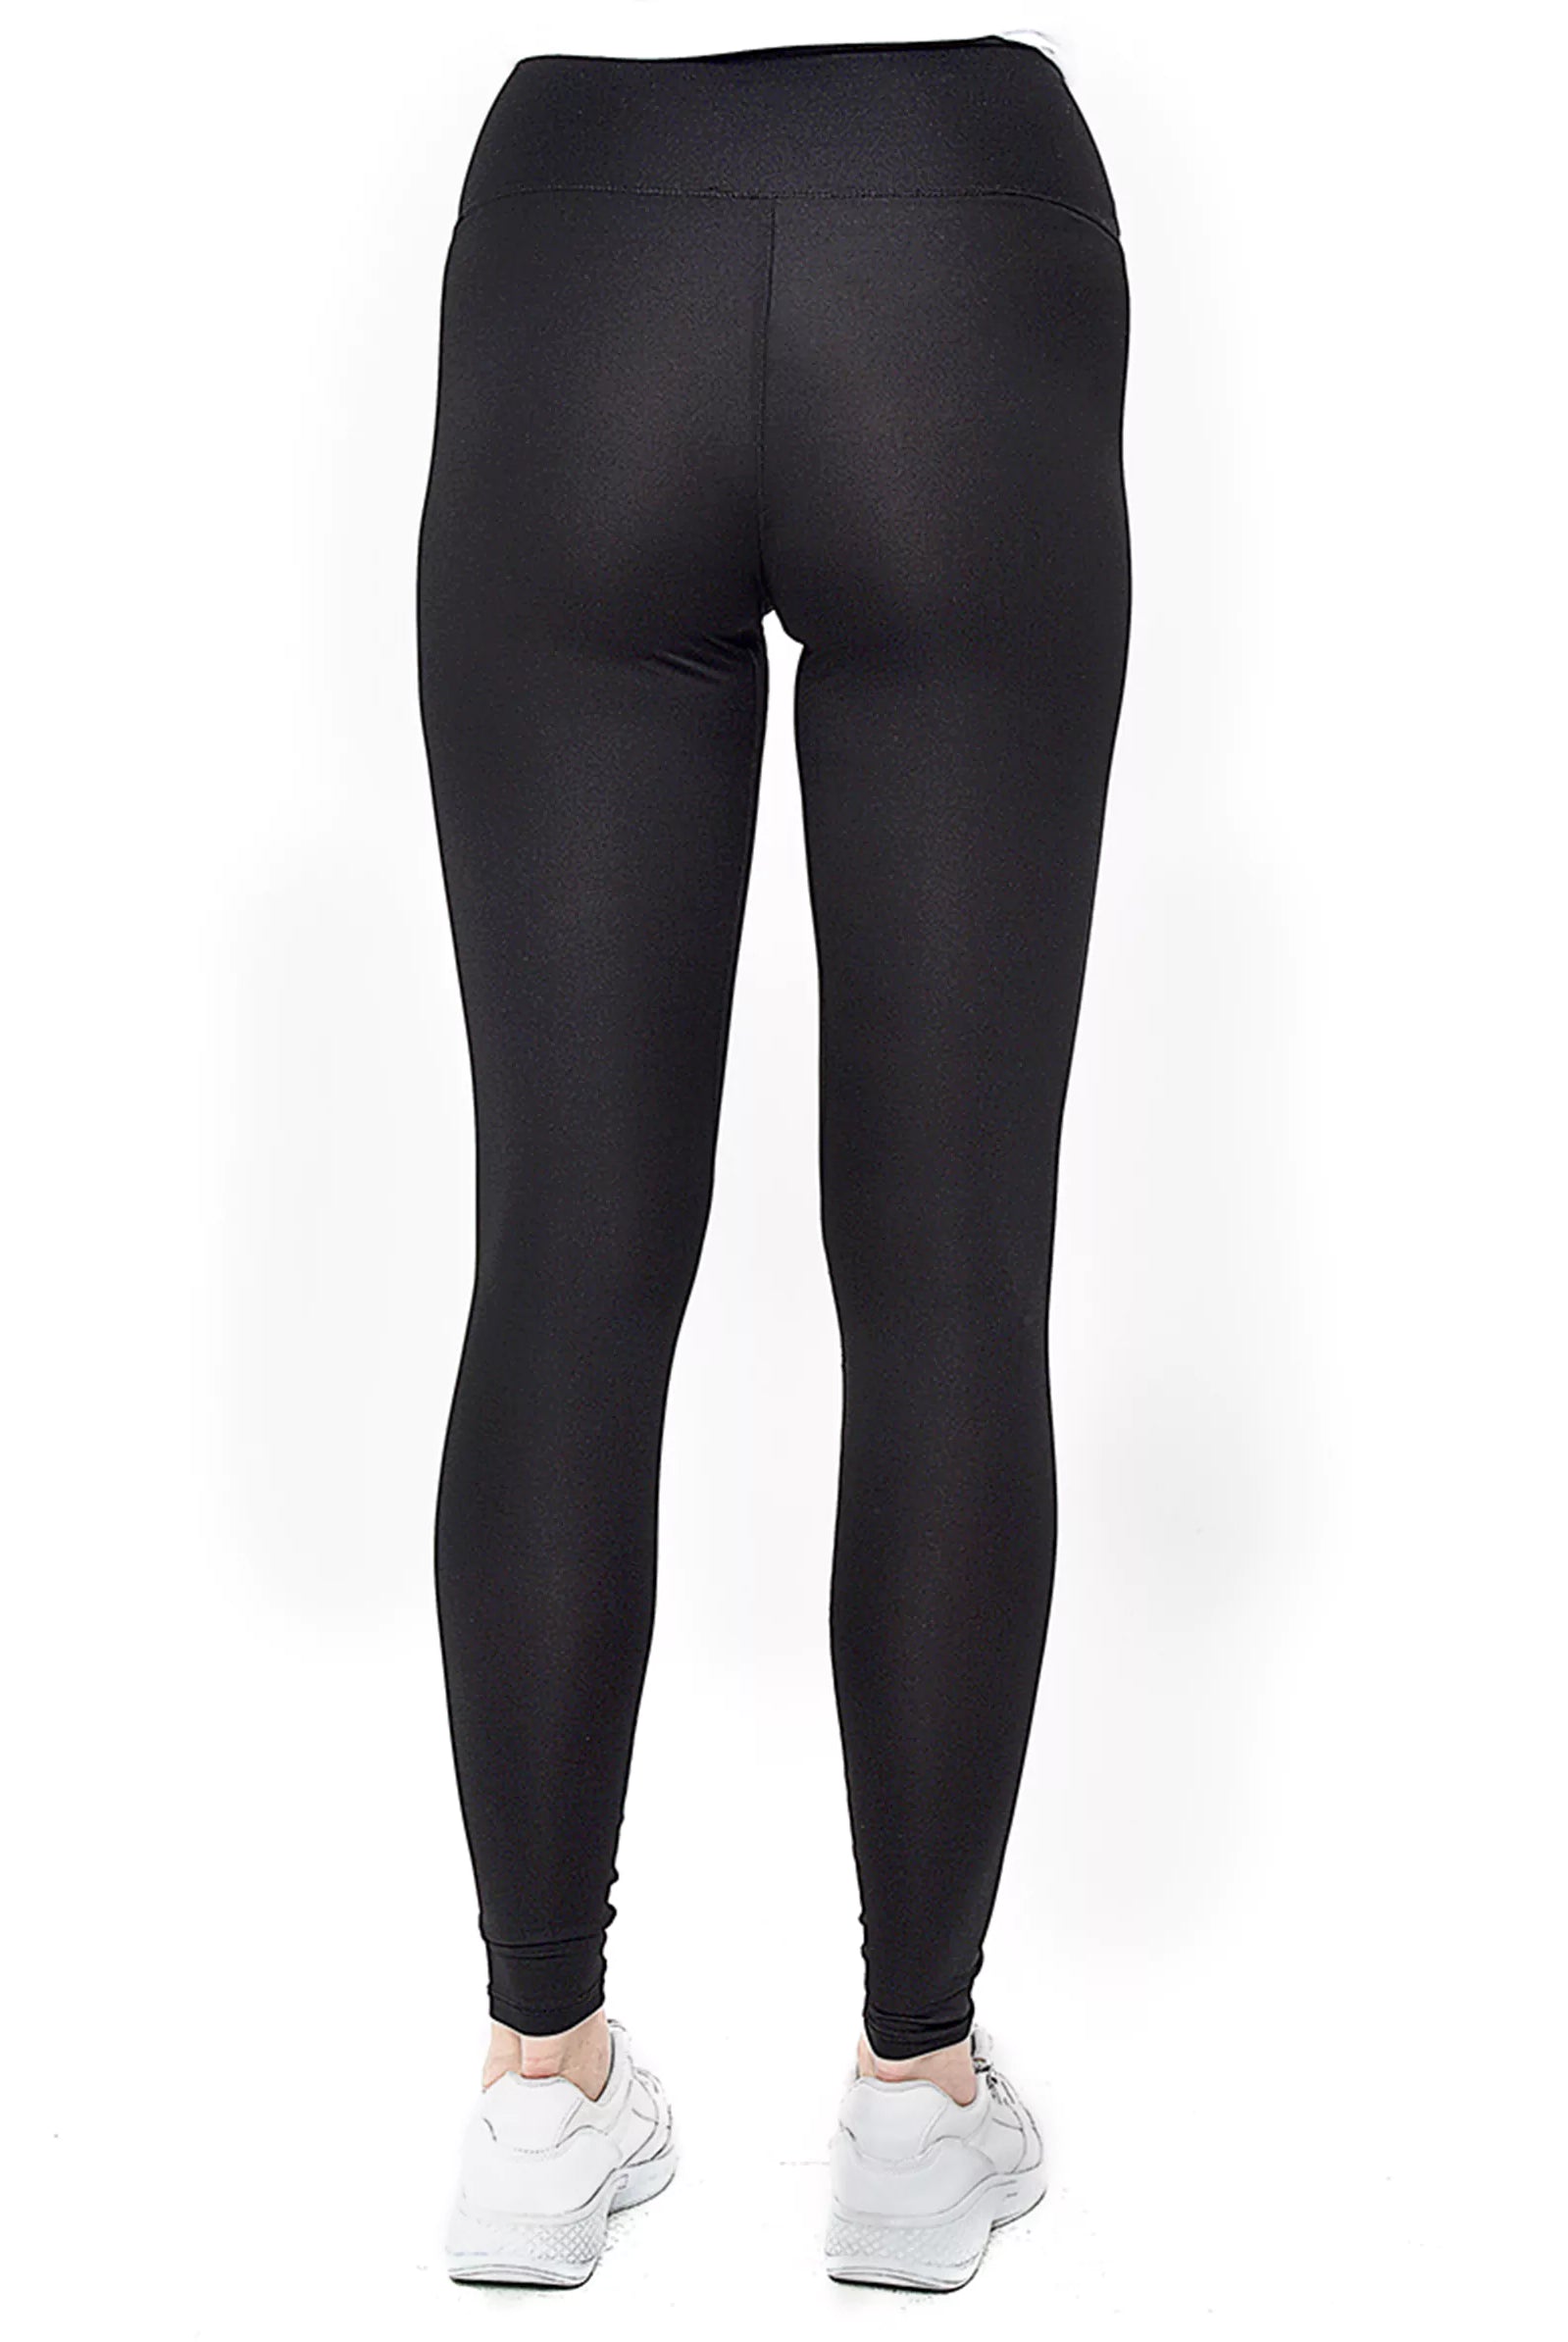 shop black leggings for women